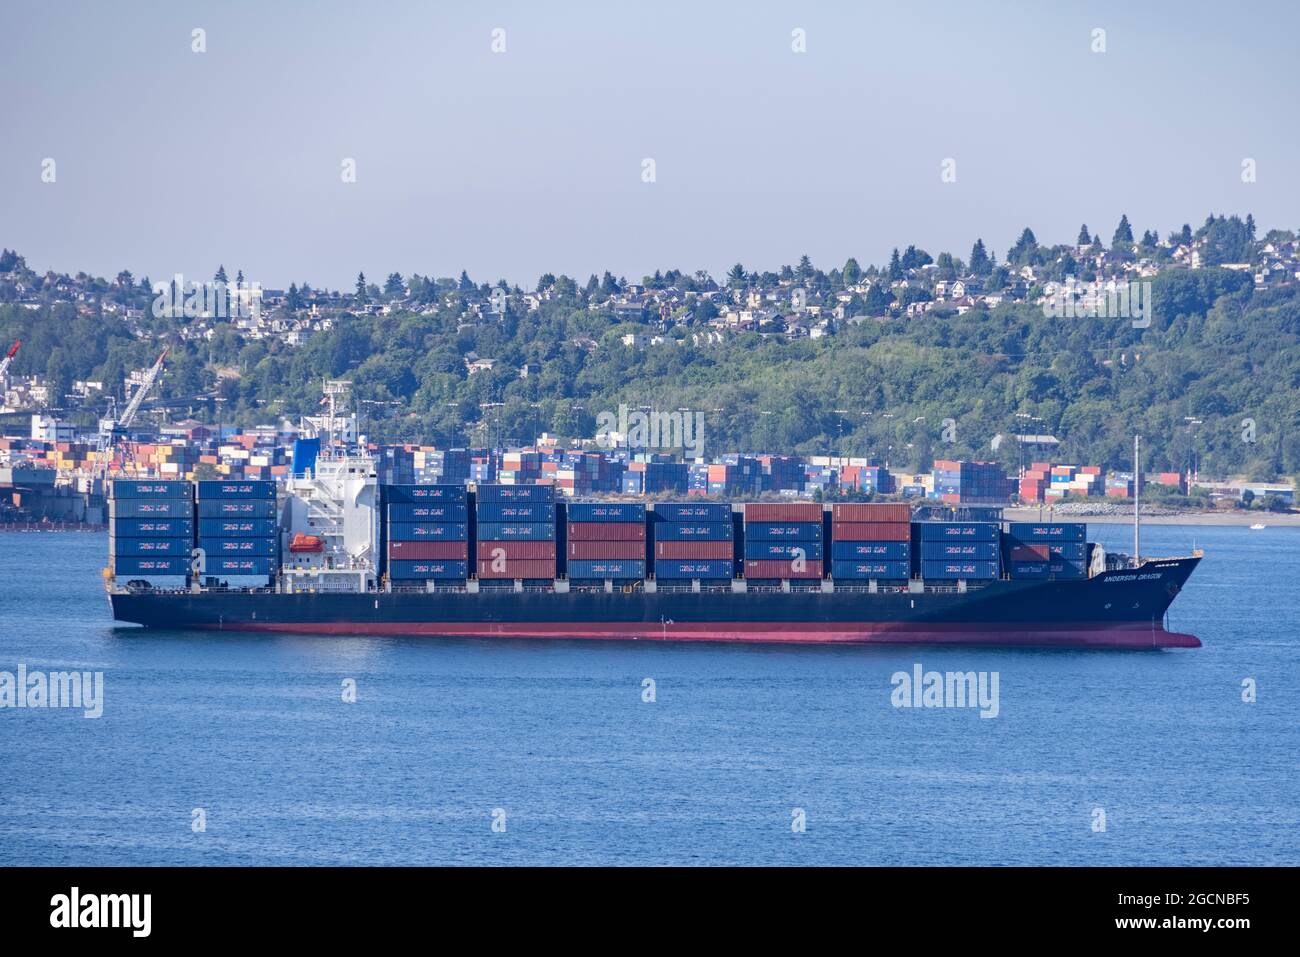 The ANDERSON DRAGON (IMO: 9470739) Container Ship ormeggiato a Seattle Harbor, Washington state, USA Foto Stock